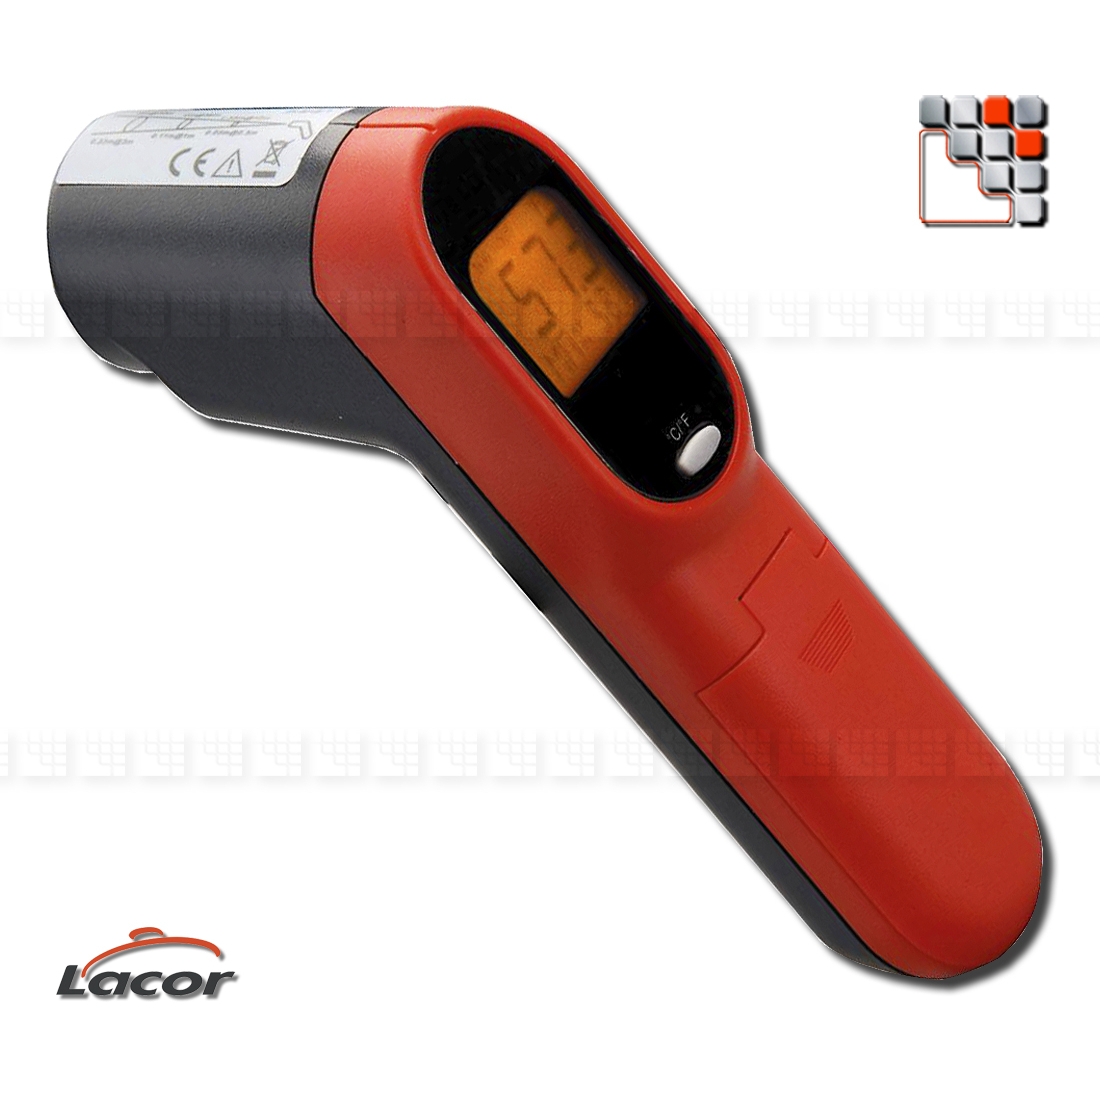 Thermometre Infrarouge Visée Laser LACOR L10-62457 ALFA FORNI Accessoires Ustensiles de Cuisine